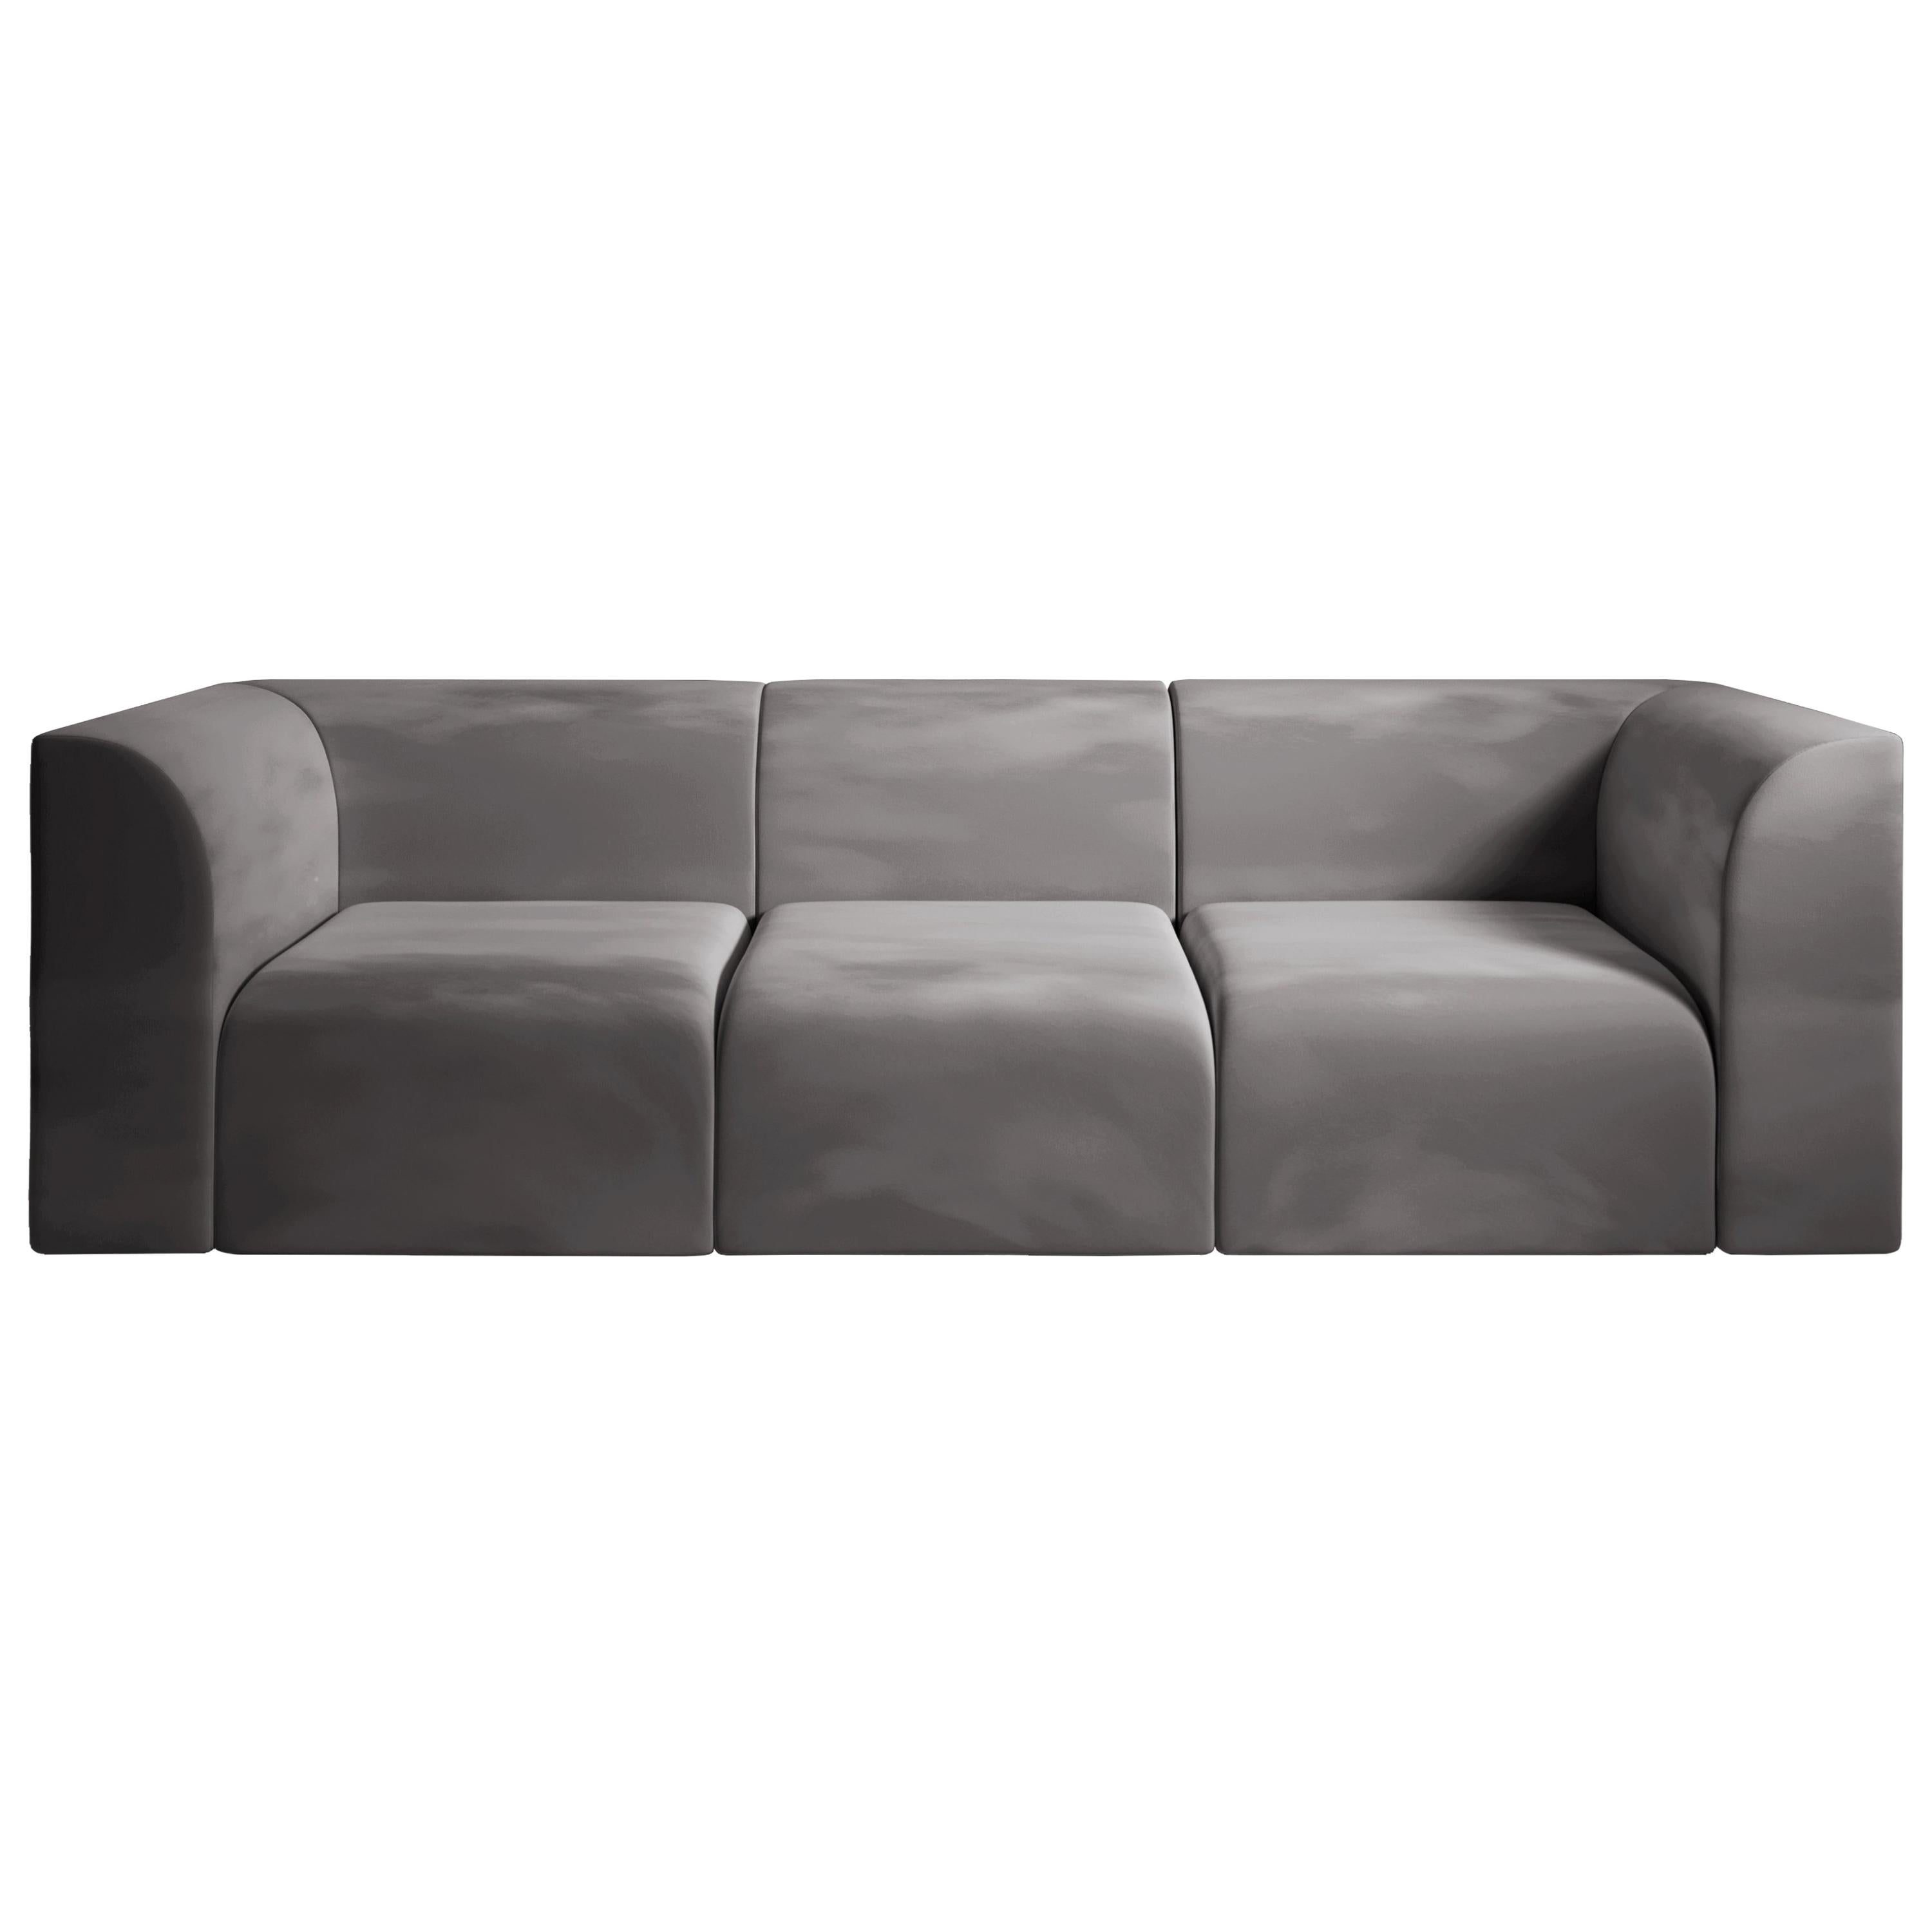 Archi 3-Seat Contemporary Sofa in Fabric